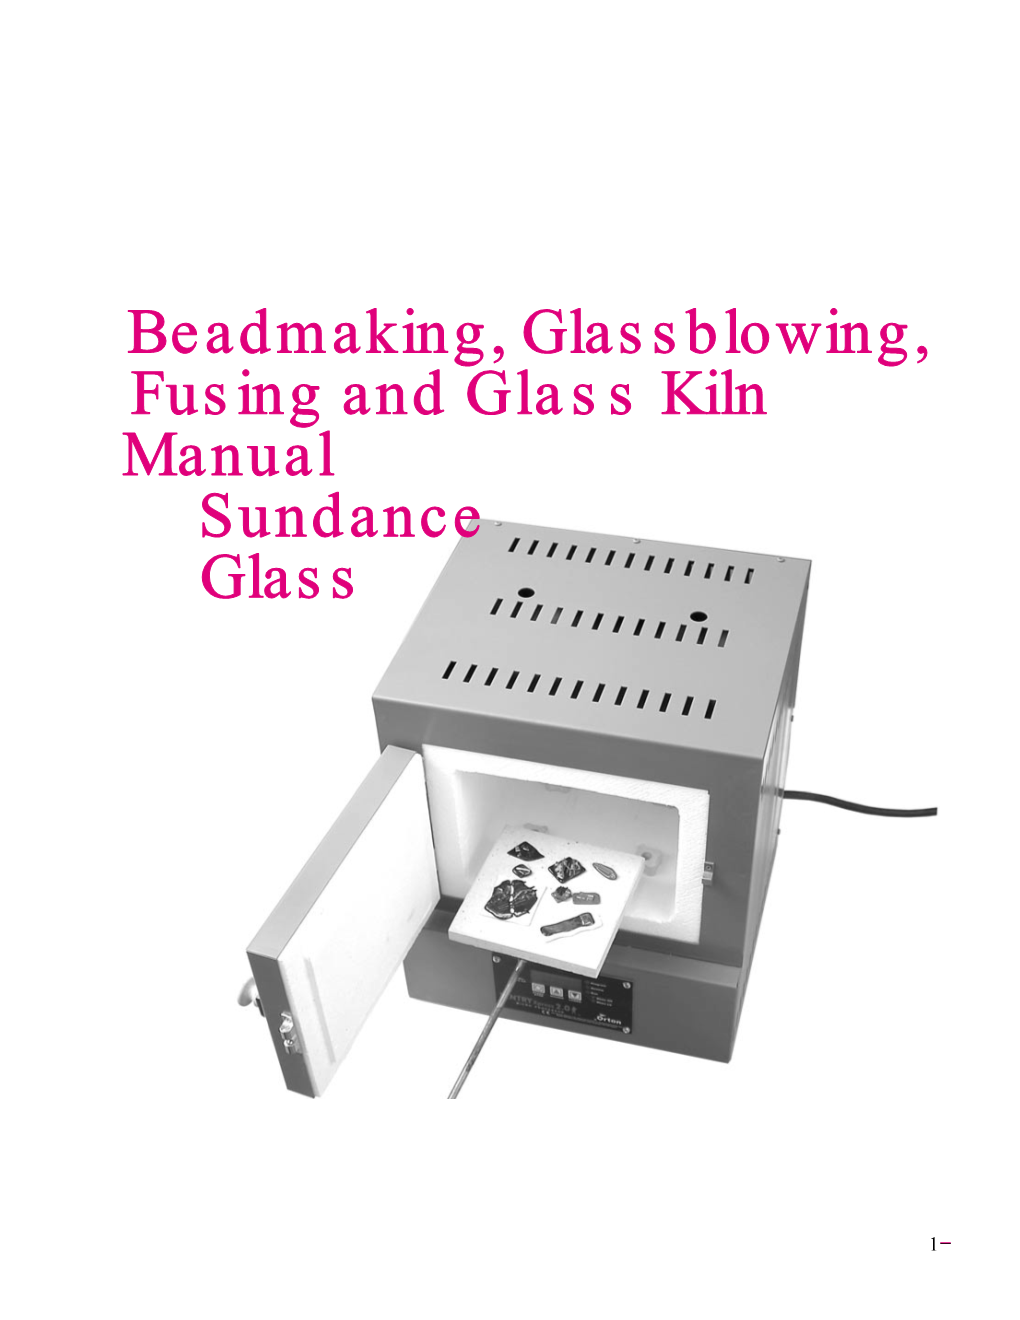 Beadmaking, Glassblowing, Fusing and Glass Kiln Manual Sundance Glass